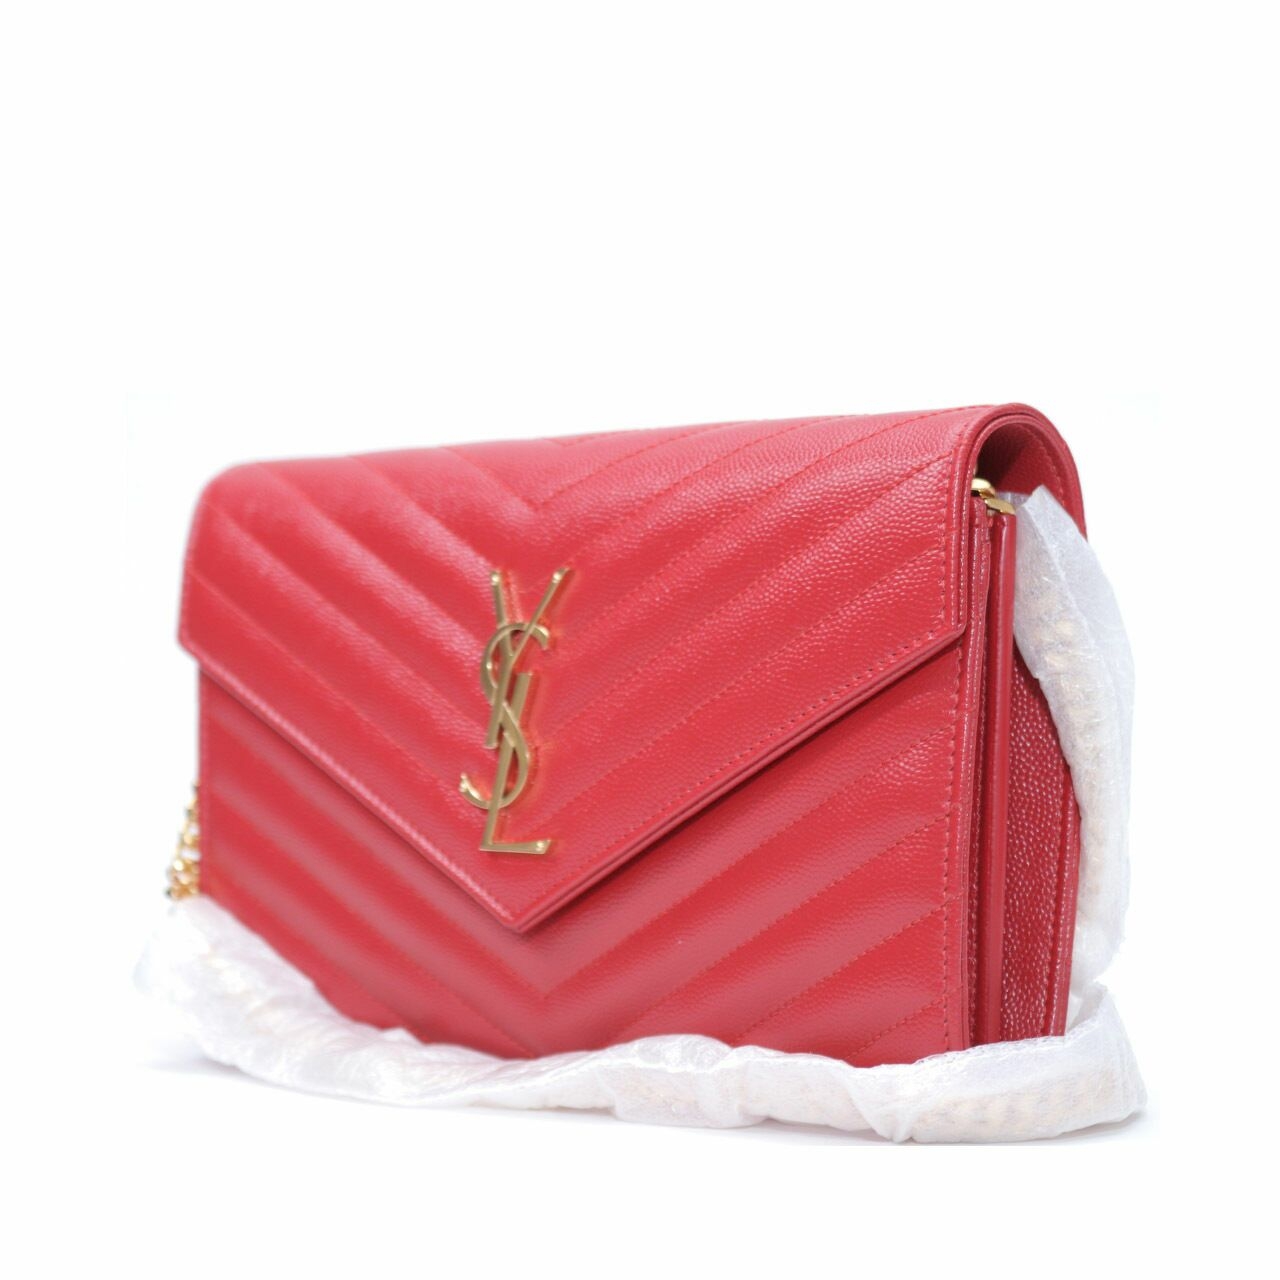 Yves Saint Laurent Monogram in Red Grain De Poudre Embossed Leather Sling Bag